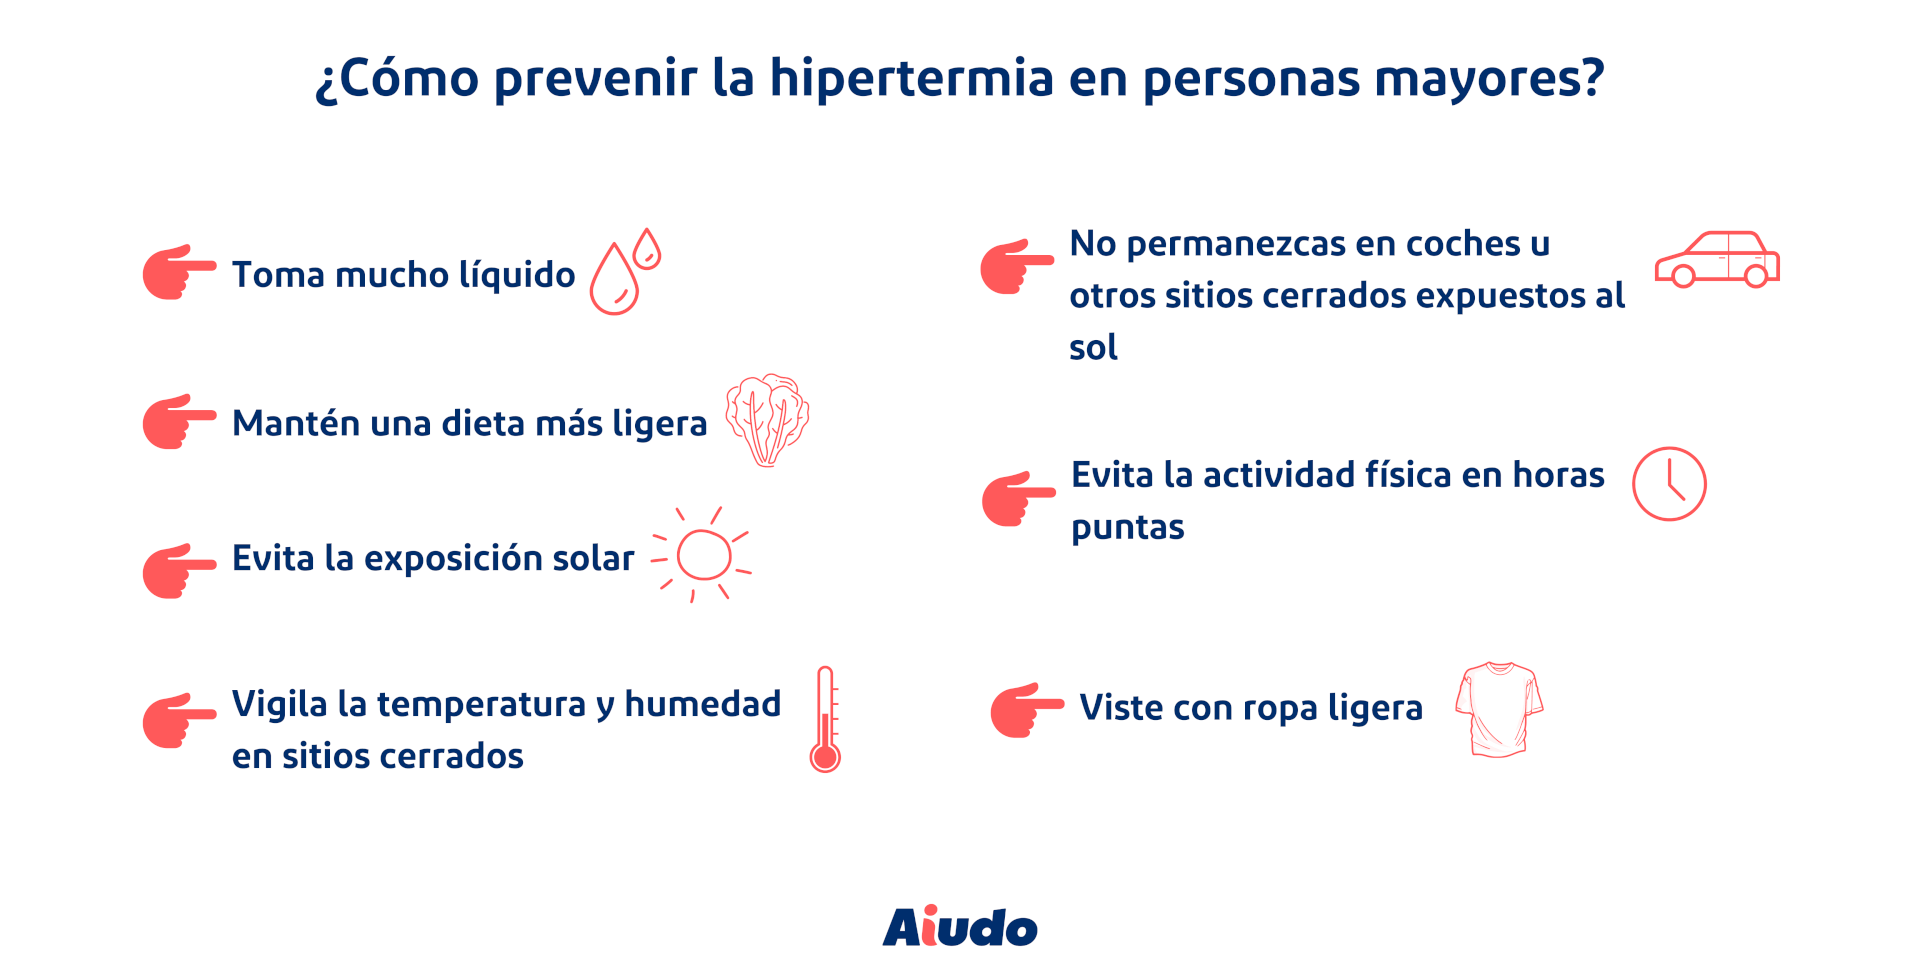 Una infografía de las pautas a seguir para prevenir la hipertermia en personas mayores.